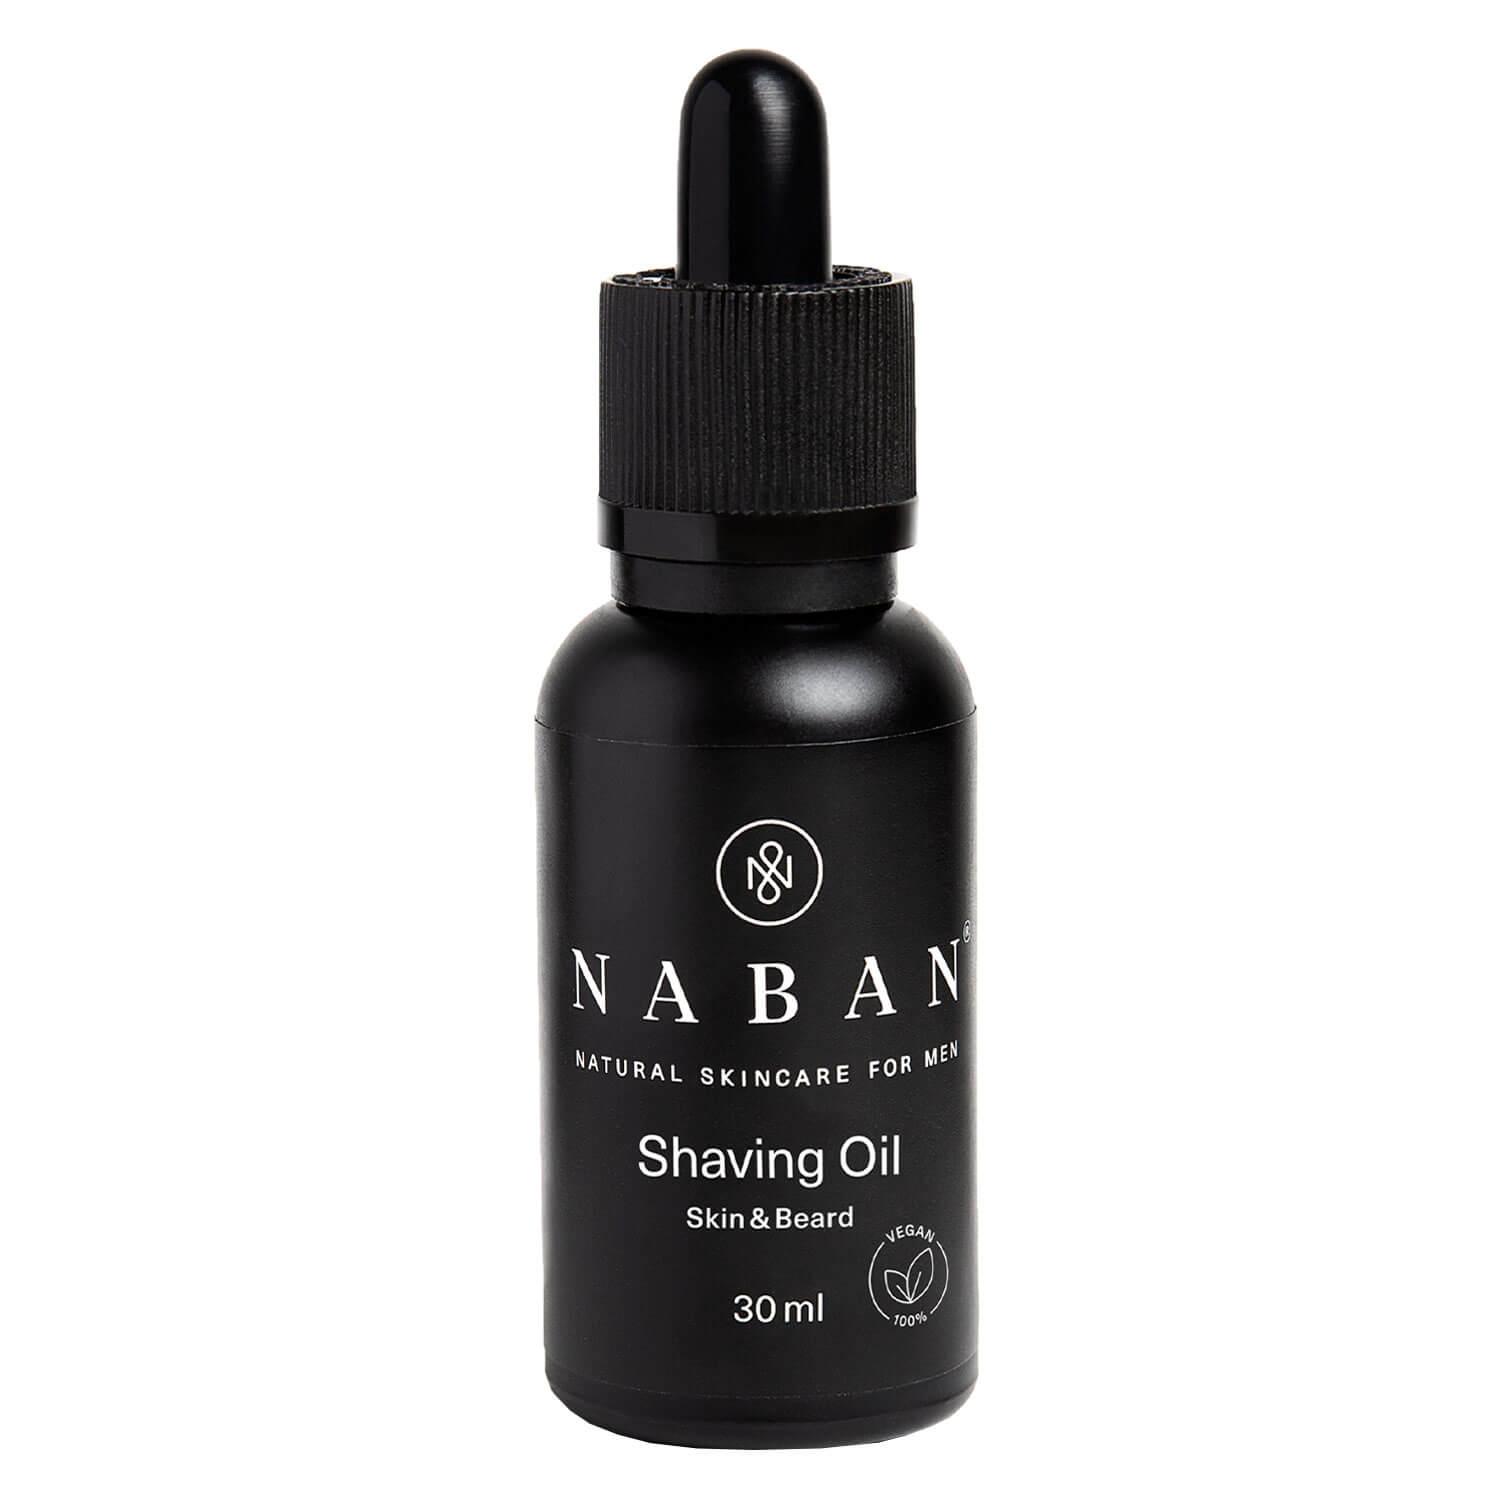 NABAN - Shaving Oil